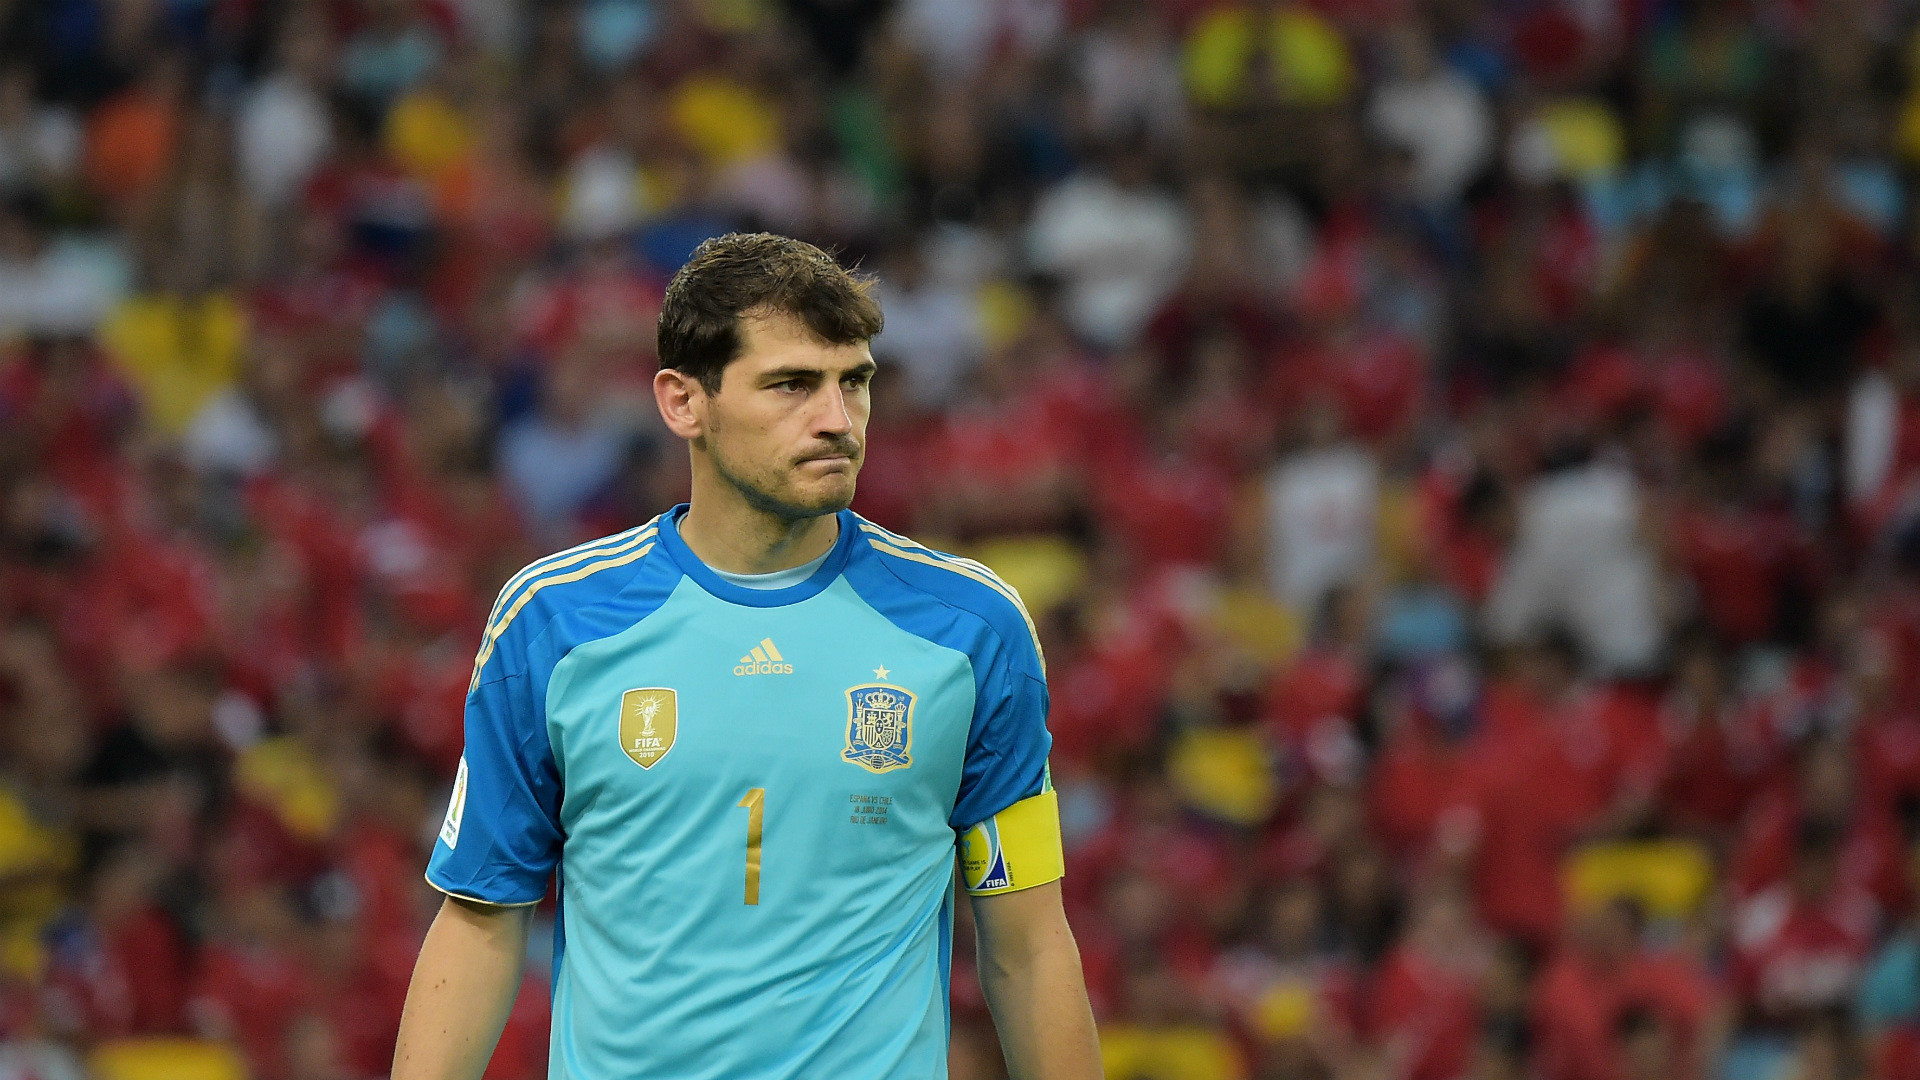 1920x1080 ... Wallpaper Iker Casillas in Portugal v Spain - UEFA EURO 2012 Semi Final  - Zimbio ...